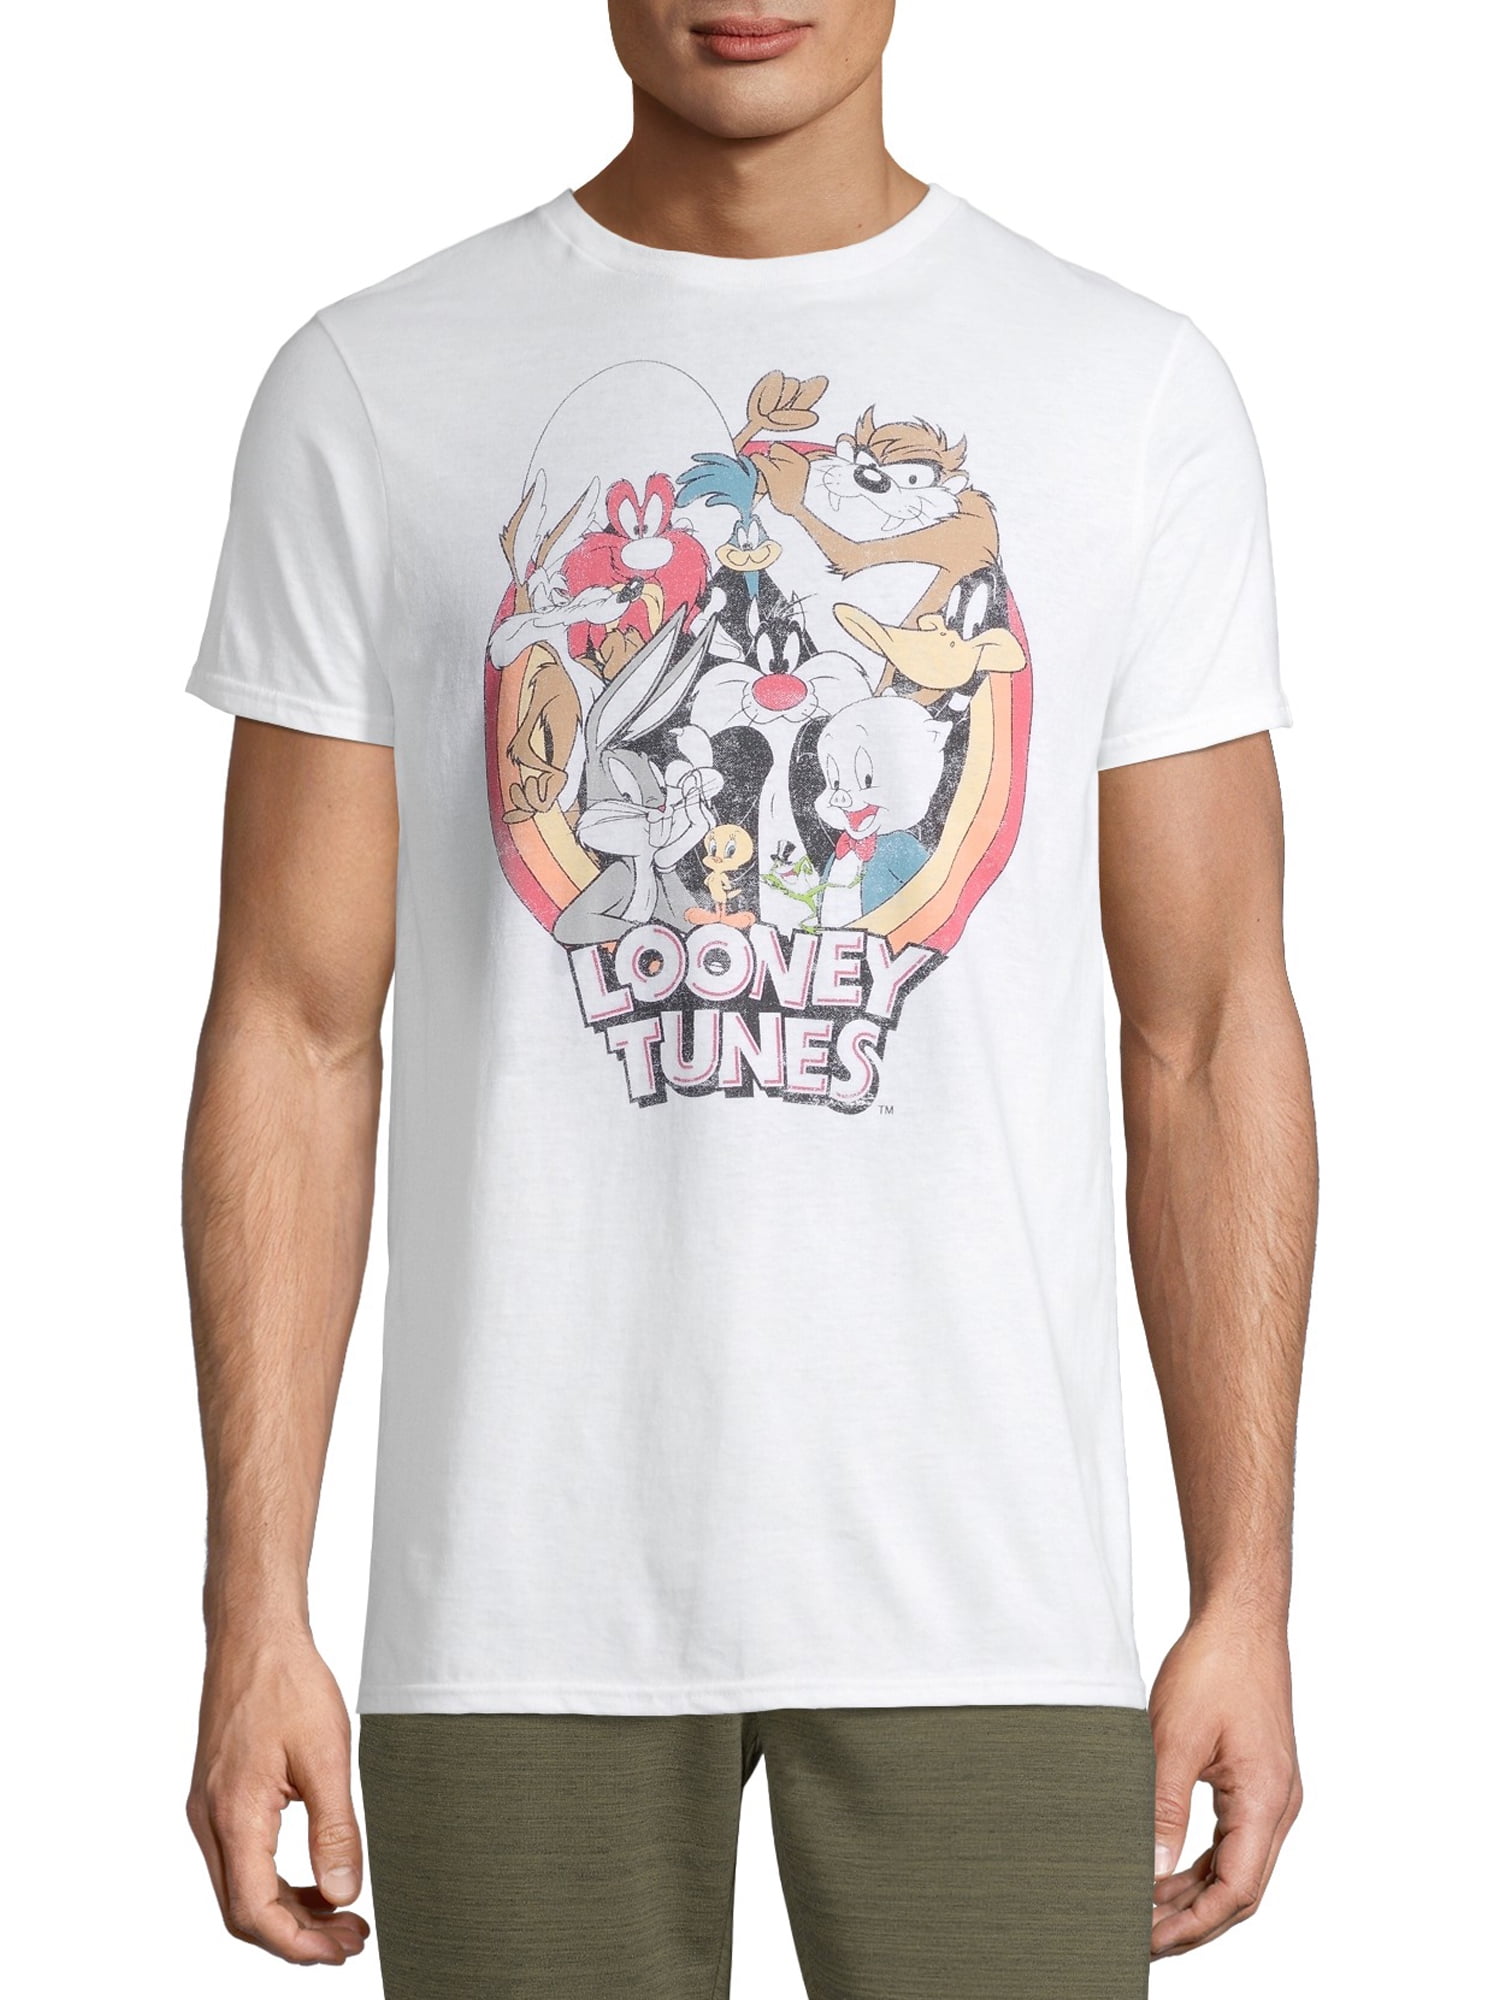 Looney Tunes Retro Men's and Big Men's Graphic T-shirt - Walmart.com